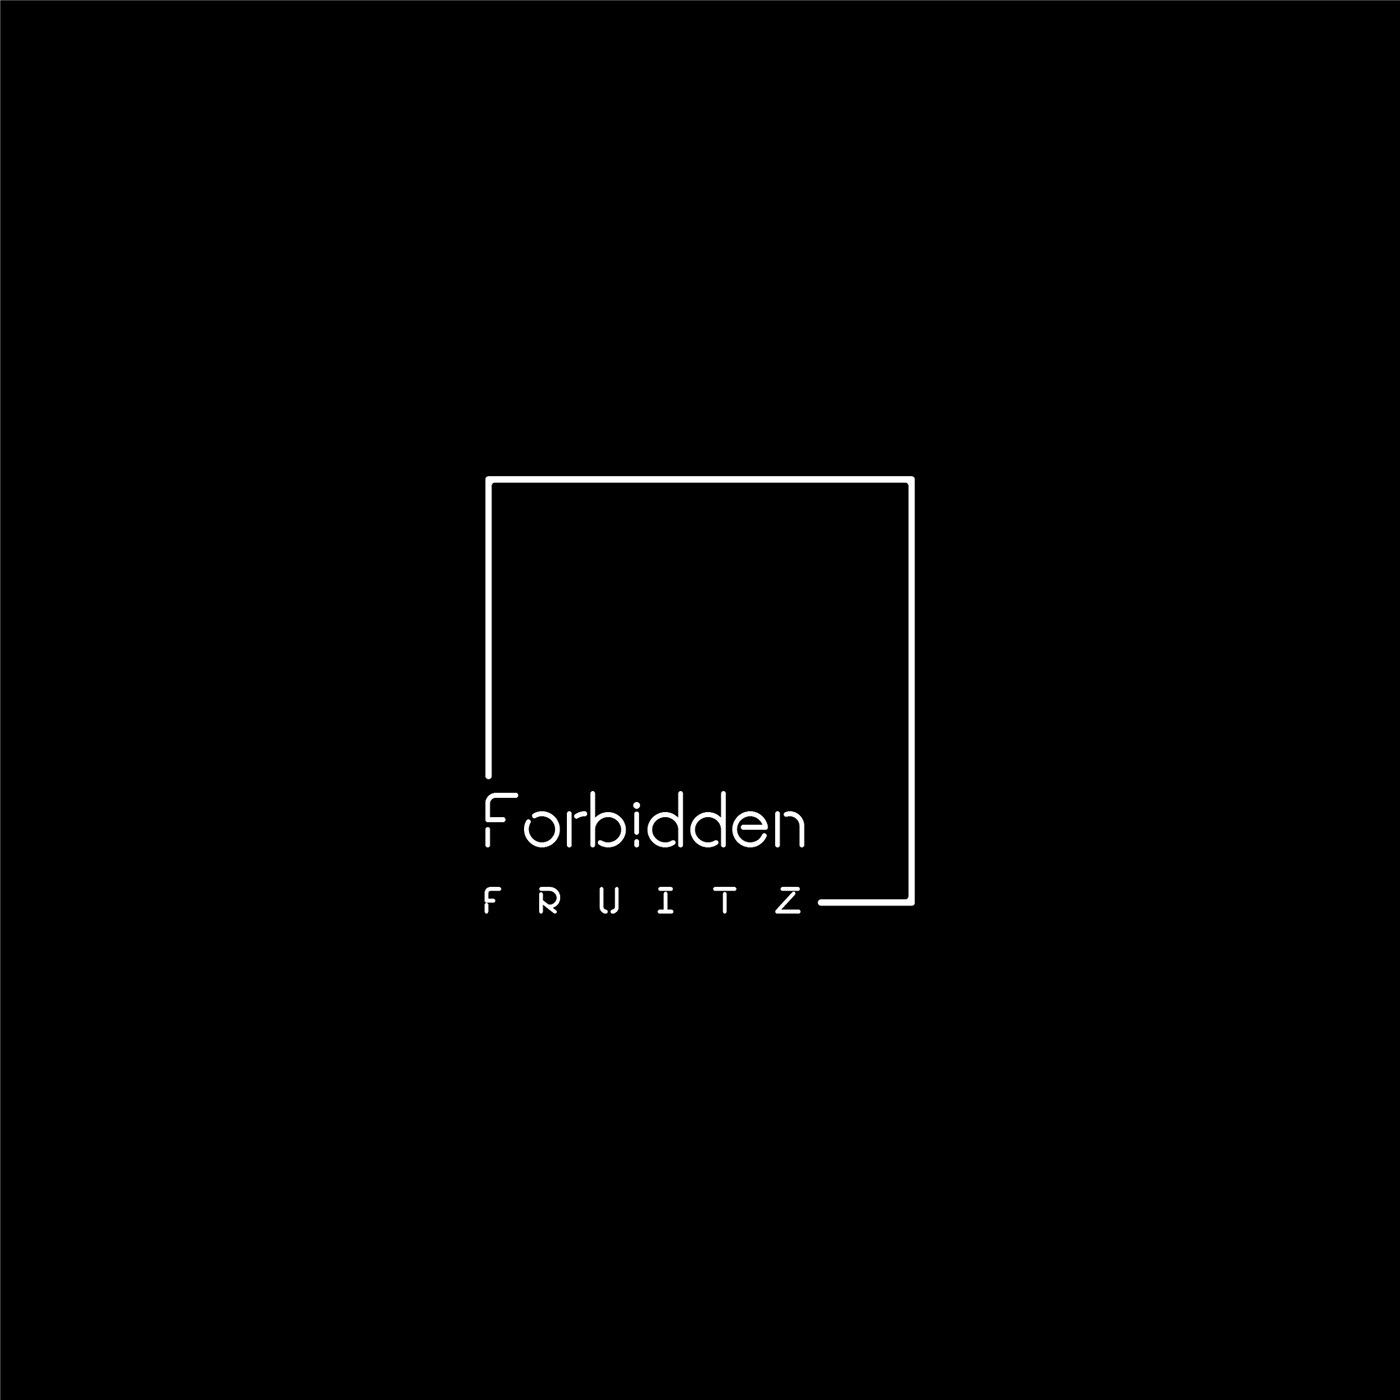 Forbidden fruits logo